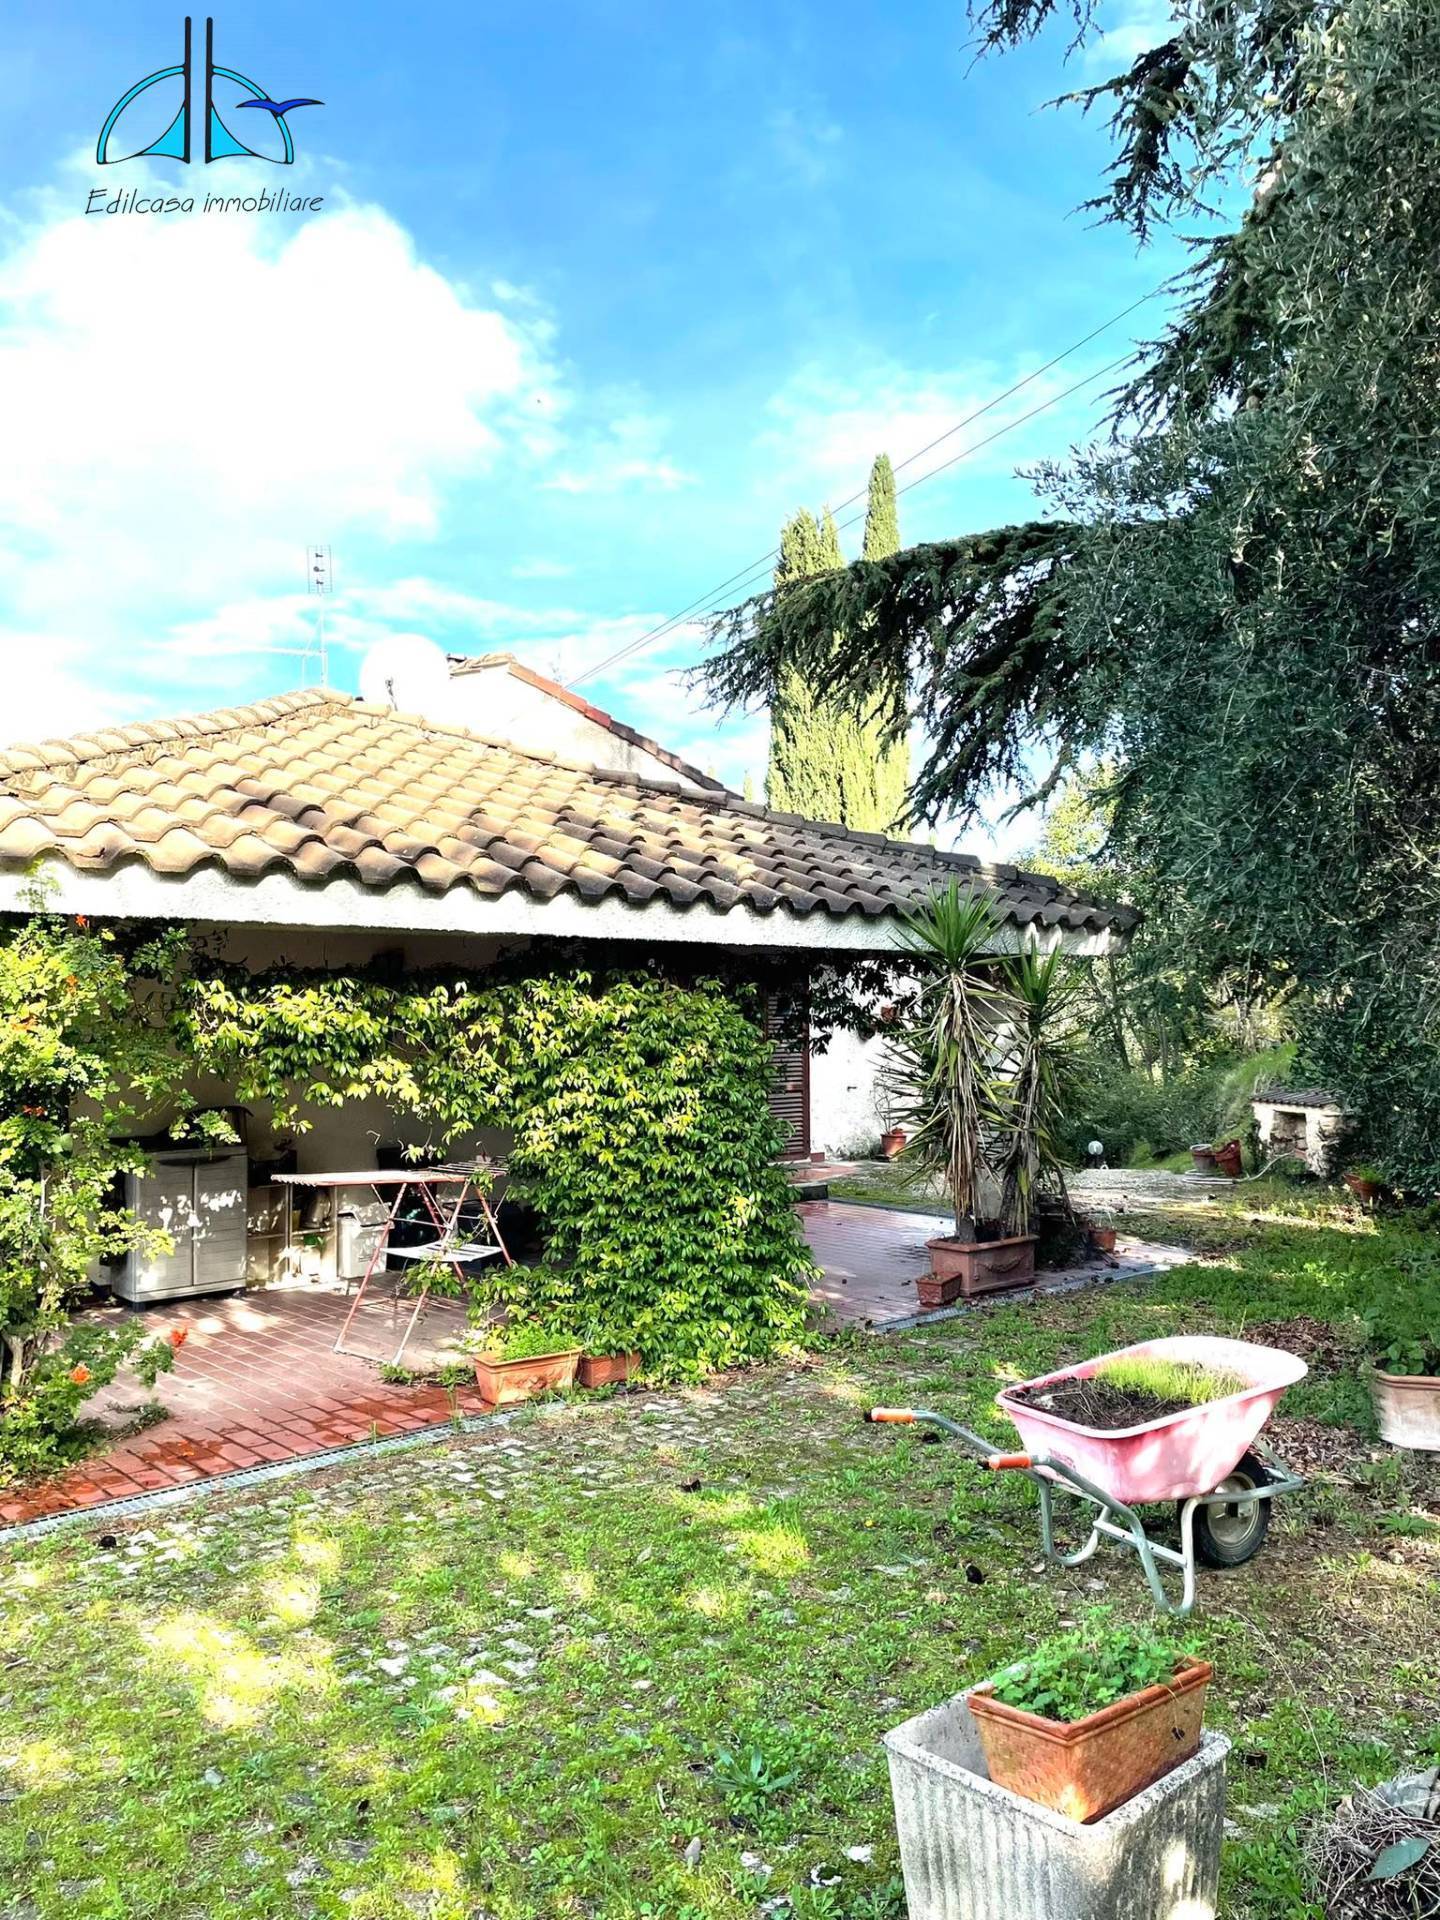 Villa in vendita a Fara in Sabina, 5 locali, zona Zona: Baccelli, prezzo € 198.000 | CambioCasa.it